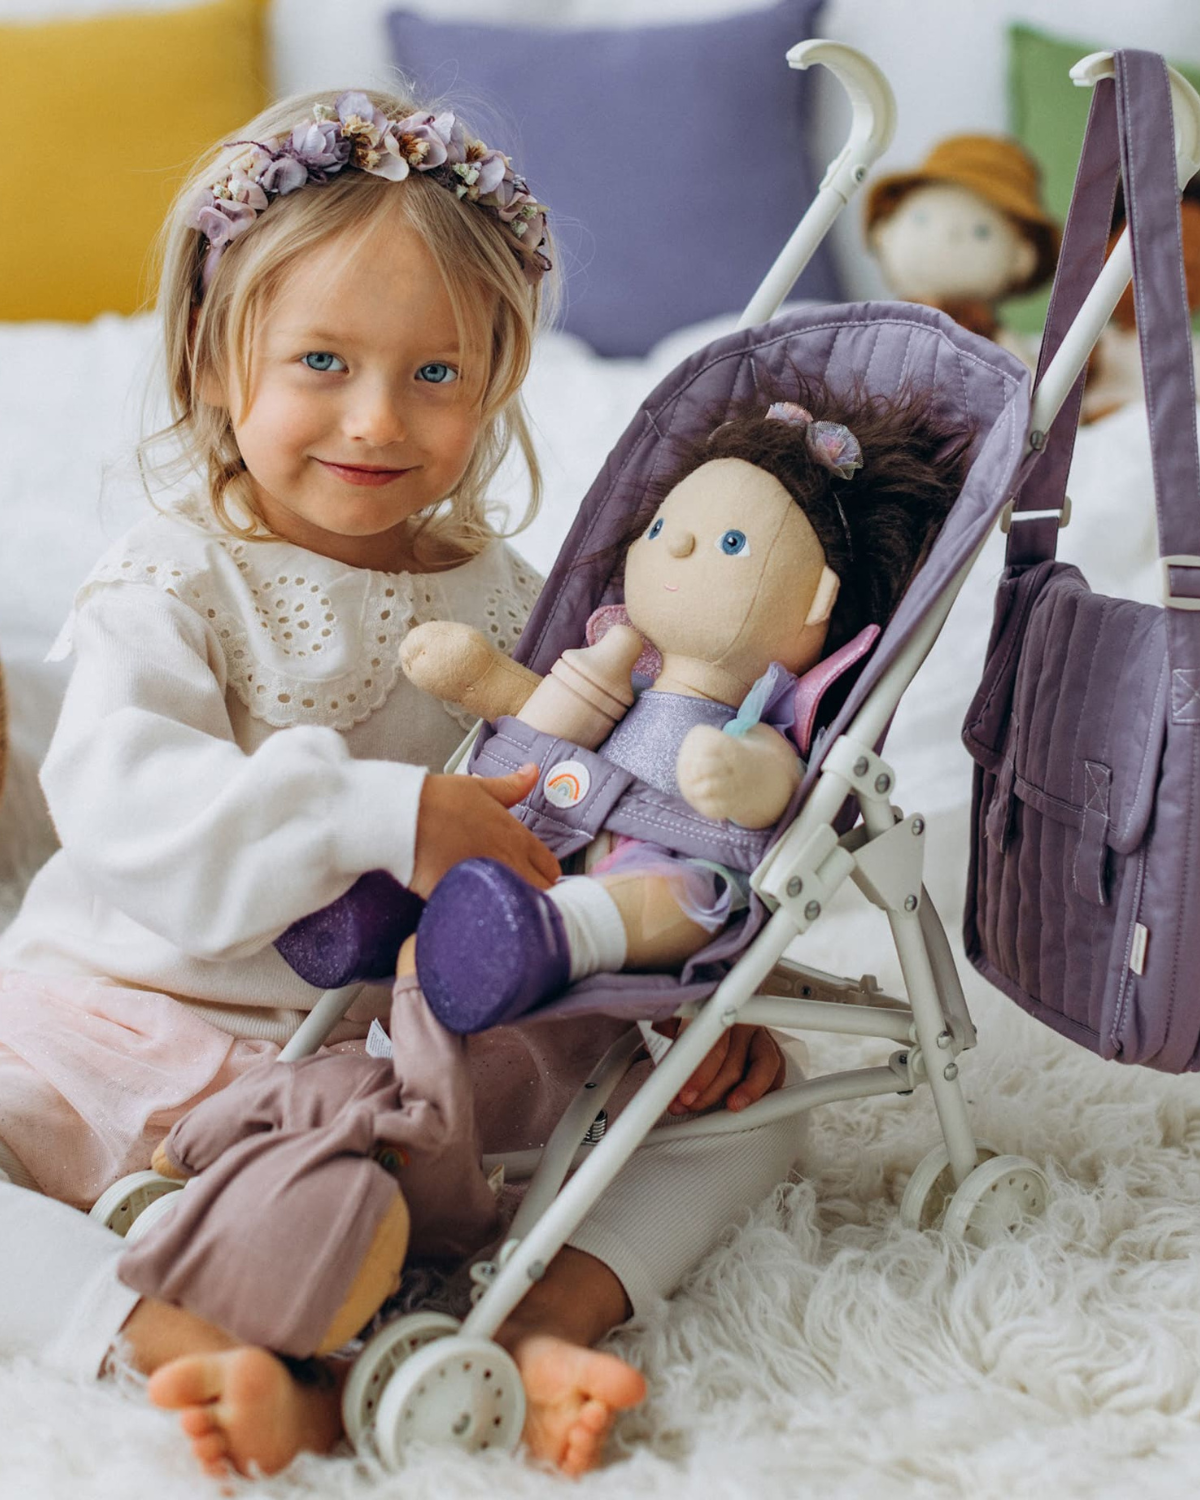 Lavender Sollie Stroller Toy: Kids' Pretend Pla